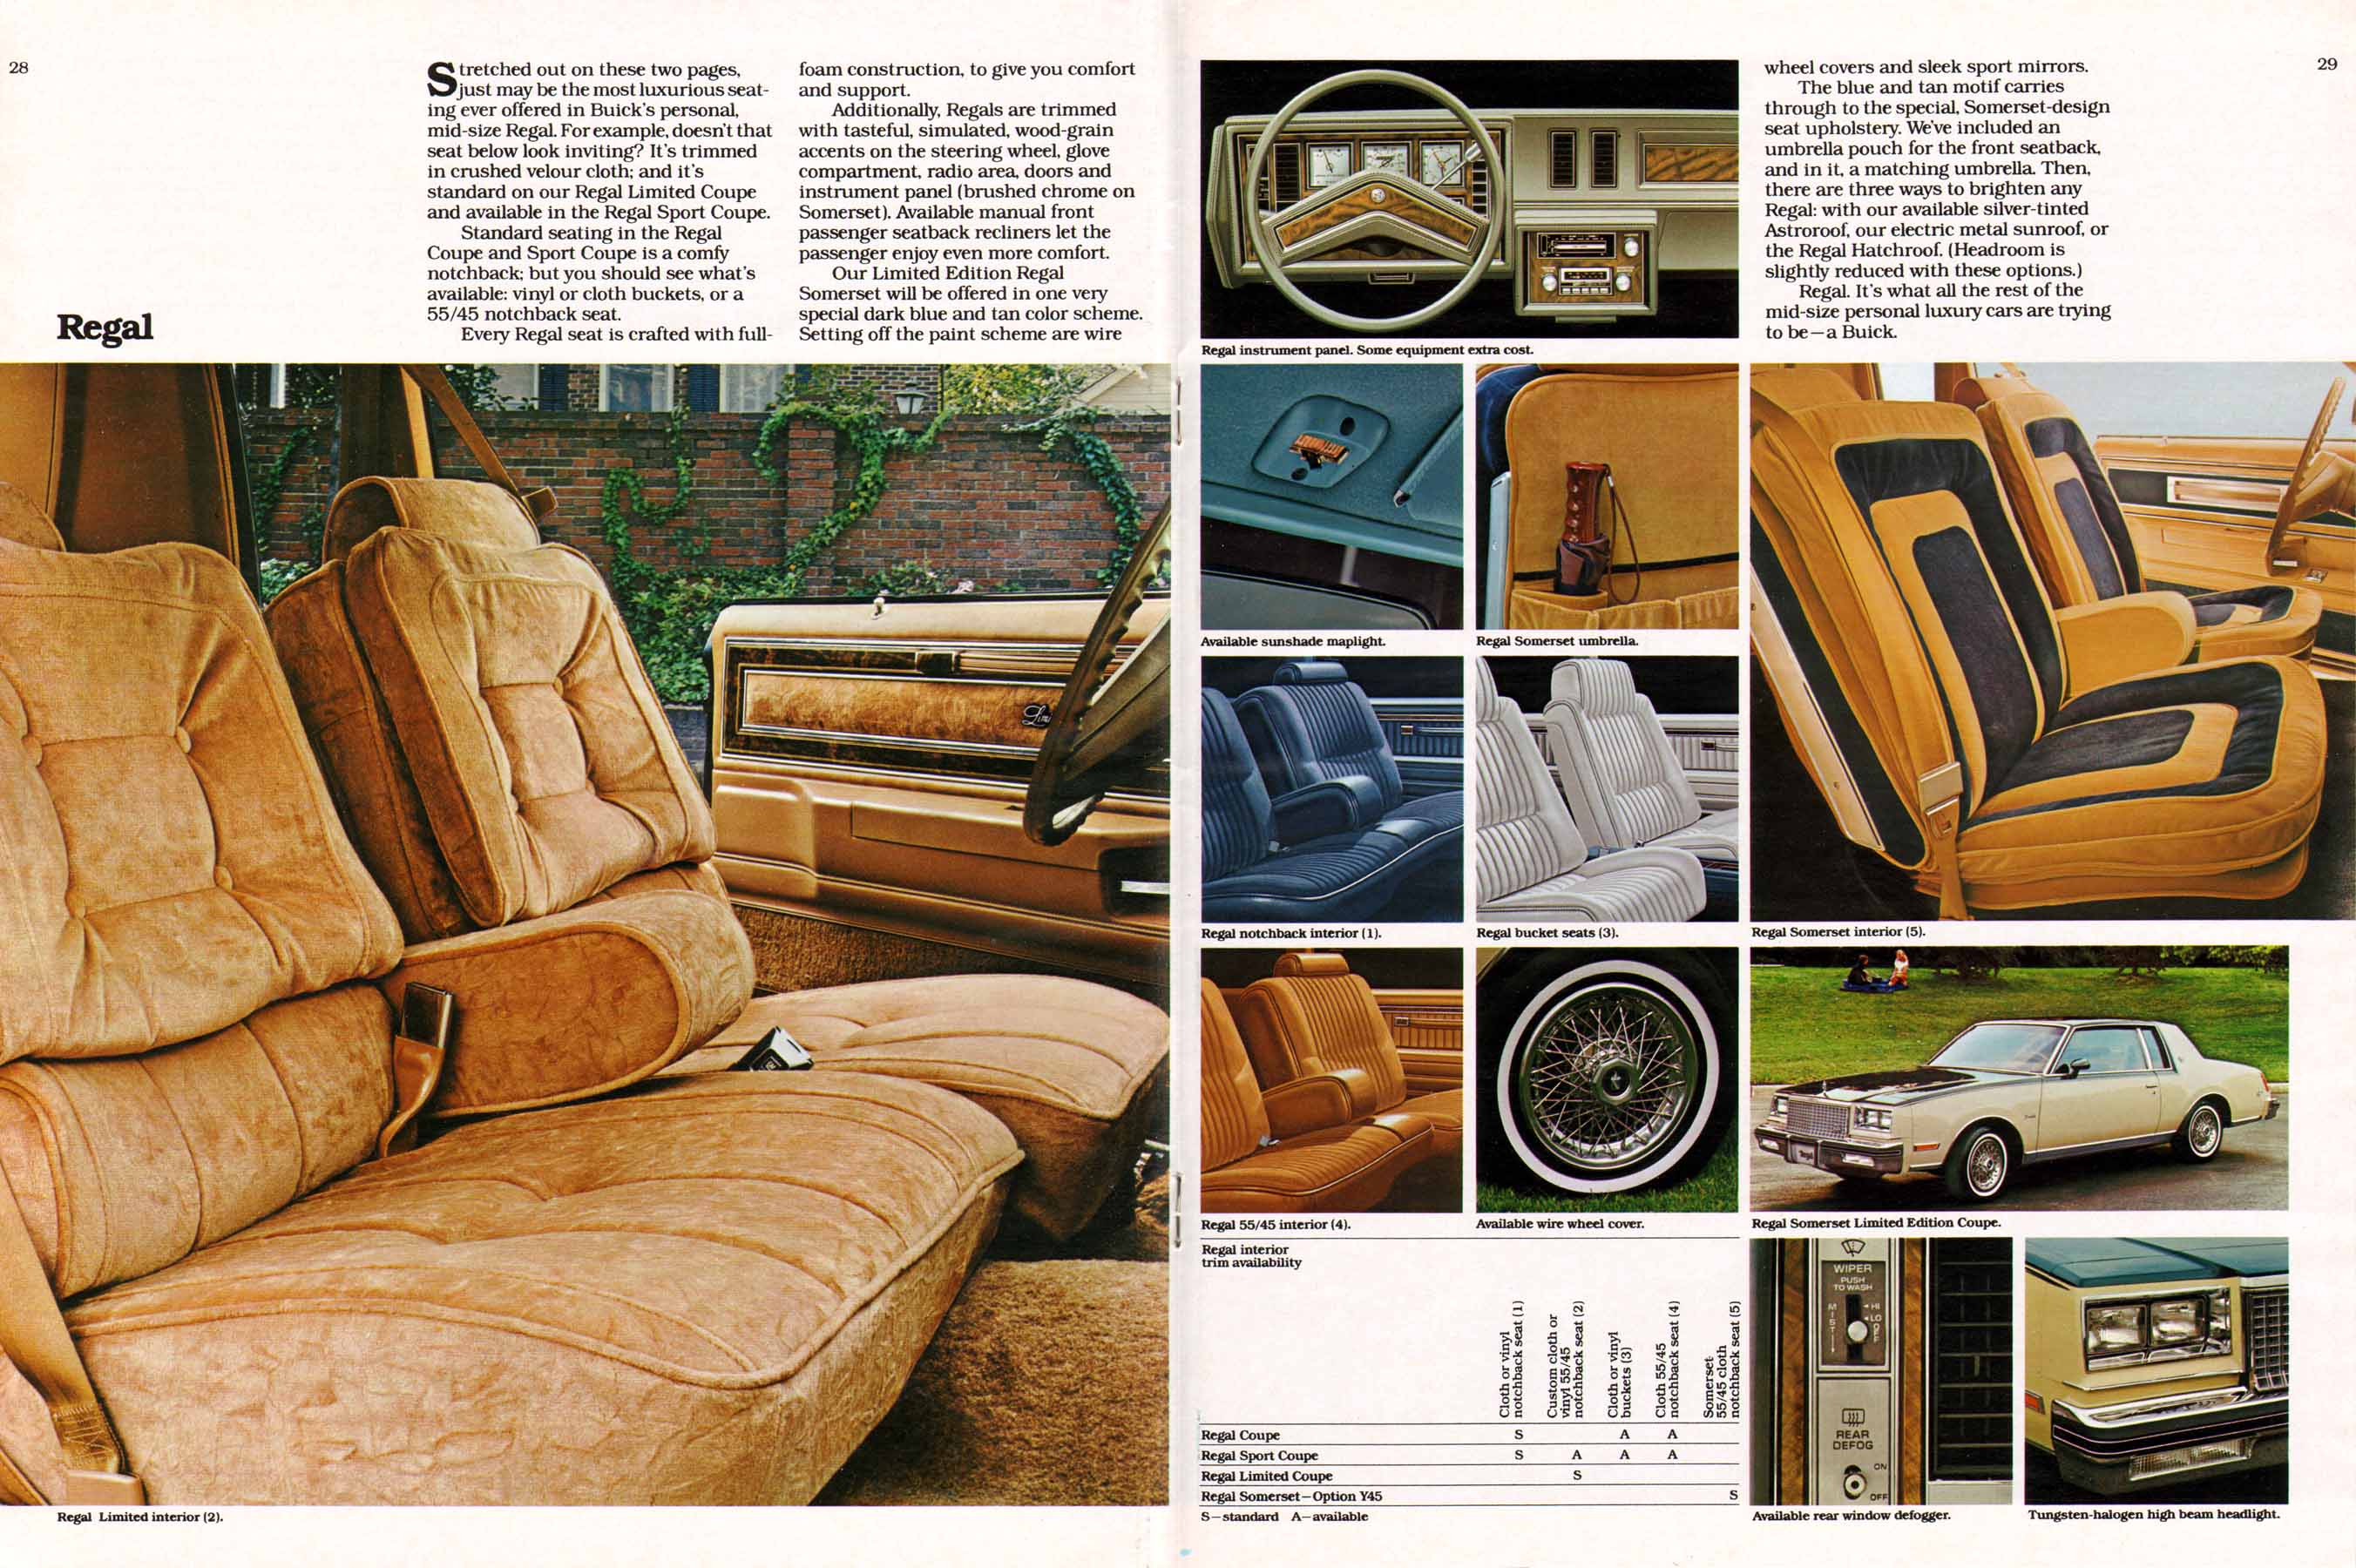 1980 Buick Full Line Prestige-28-29